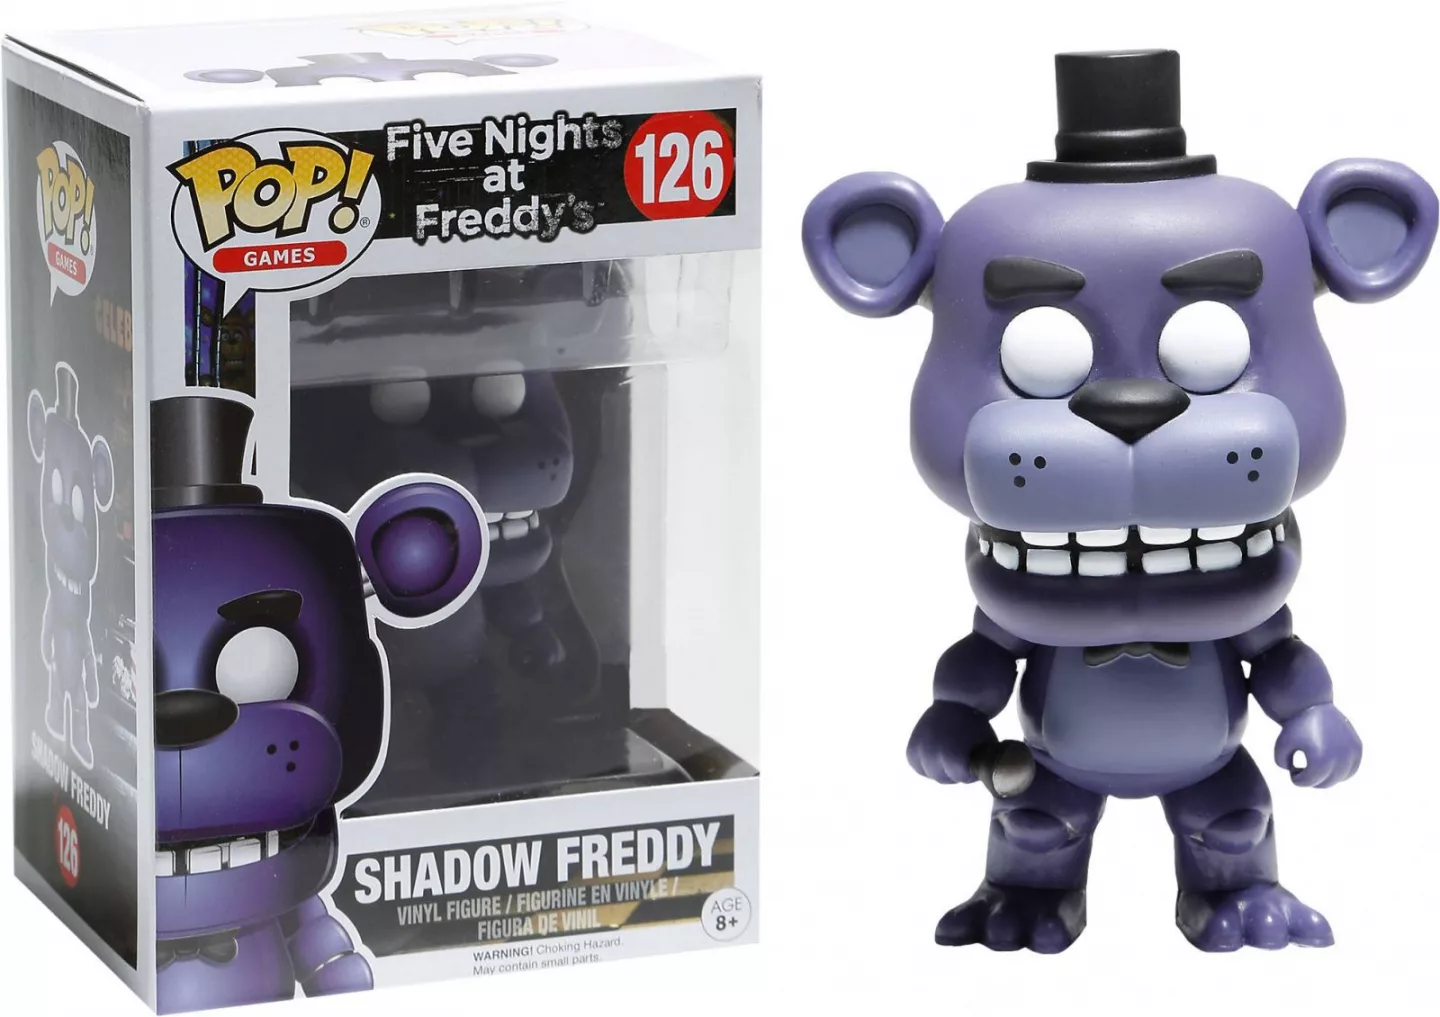 Five Nights at Freddy's POP! Games Vinyl Figure Shadow Freddy 9 cm Funko